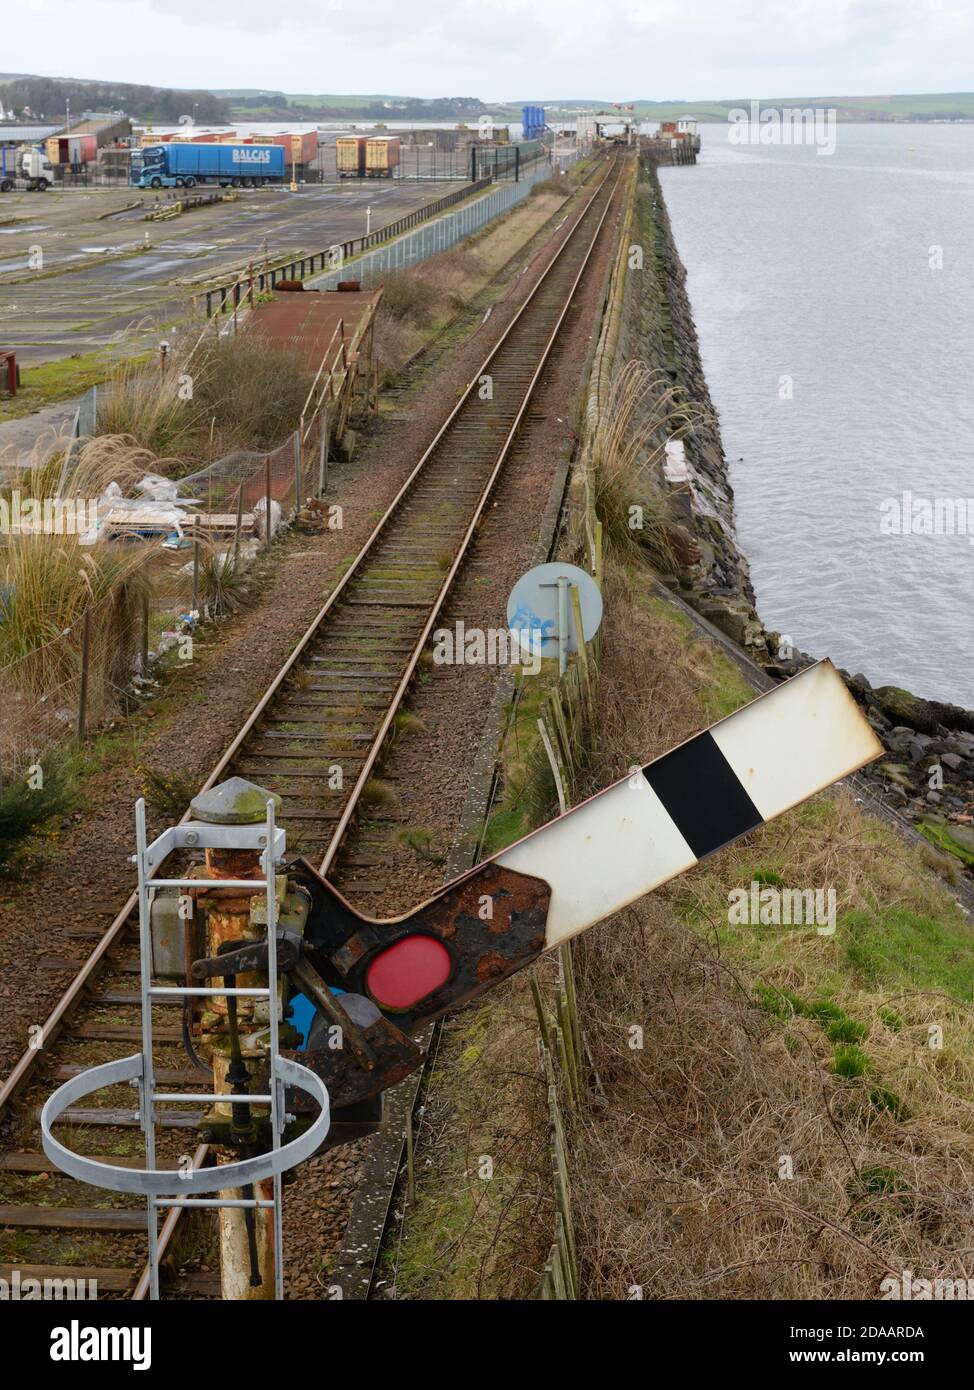 Il vecchio braccio di segnalazione meccanico ferroviario in posizione sollevata indica che è possibile procedere in sicurezza. Foto Stock